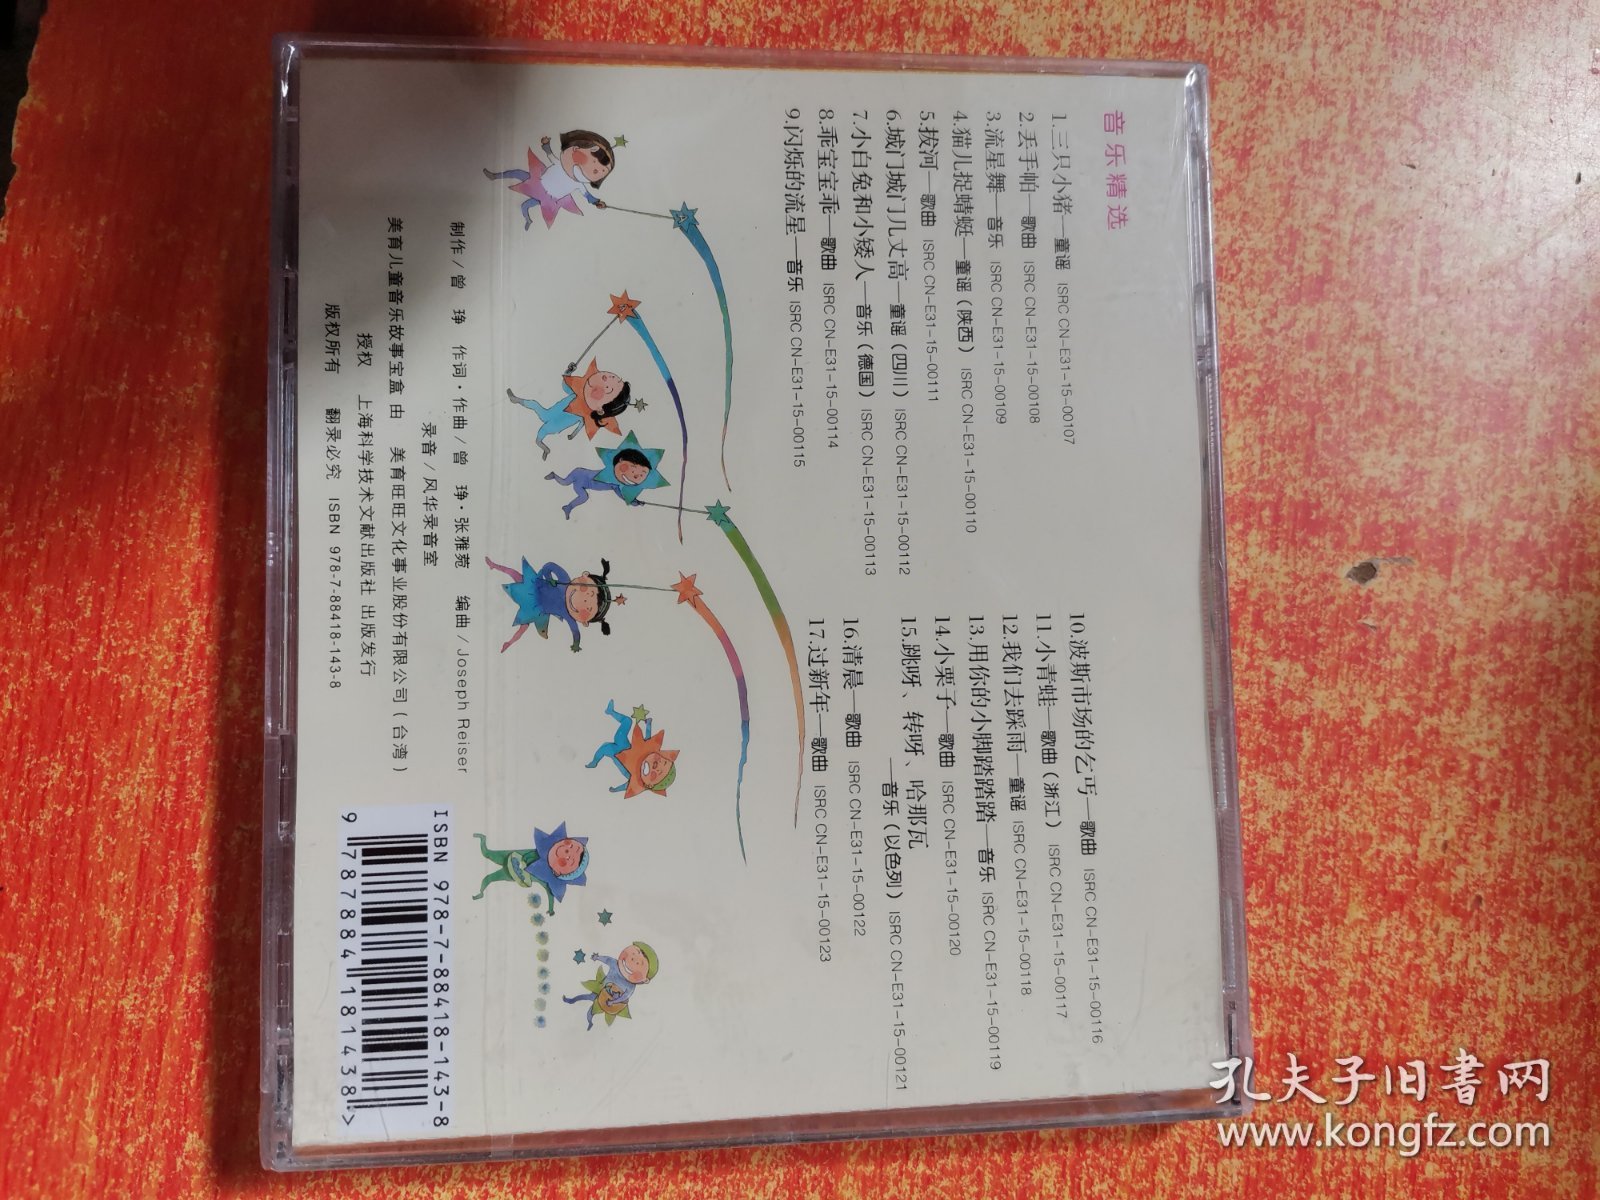 CD 光盘  小流星亮晶晶 3 音乐精选